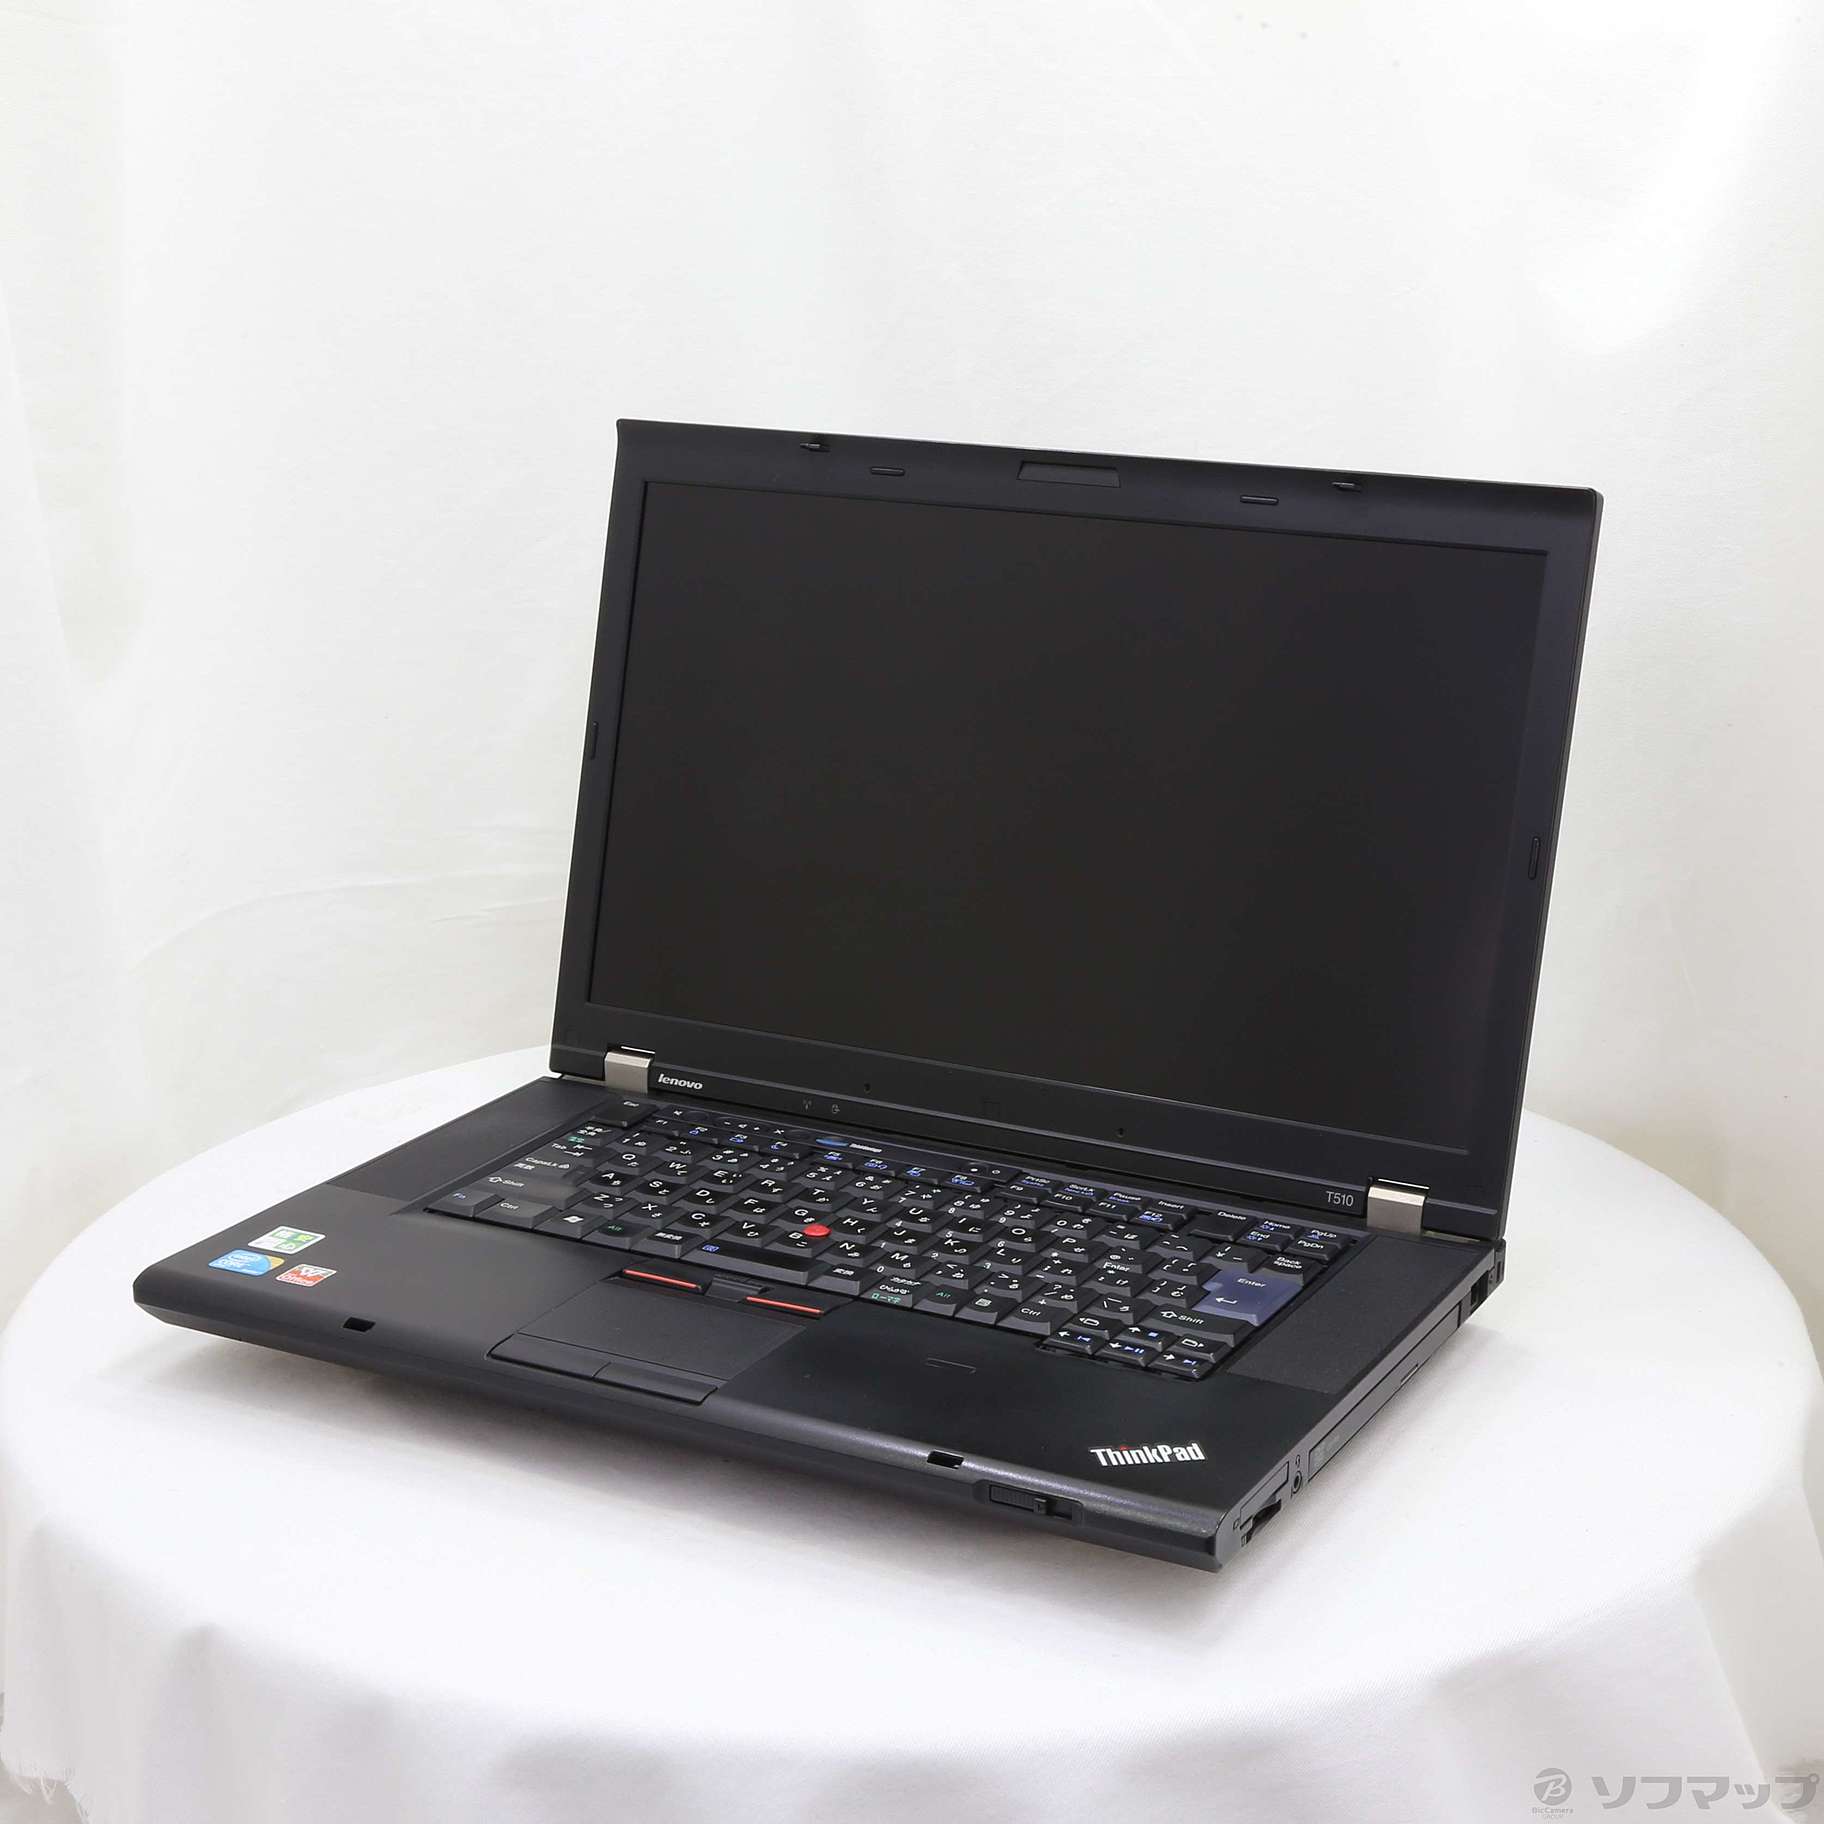 セール対象品 格安安心パソコン ThinkPad T510 4313PW3 ※バッテリー完全消耗